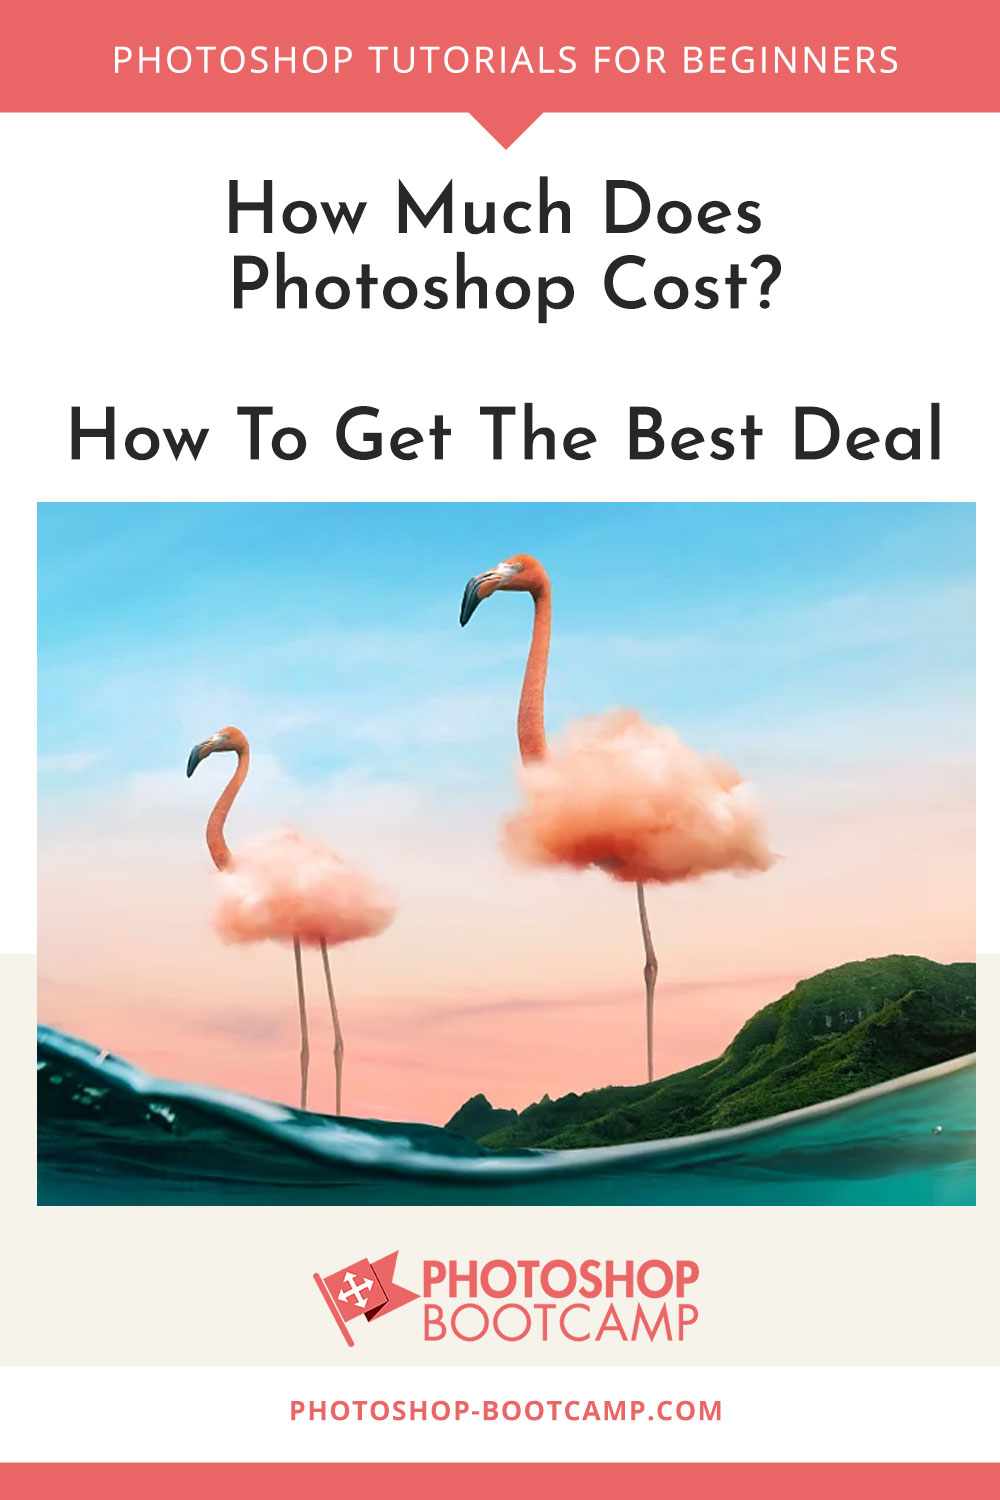 Quanto custa o Photoshop Custo de dezembro de 2020 Photoshop Bootcamp